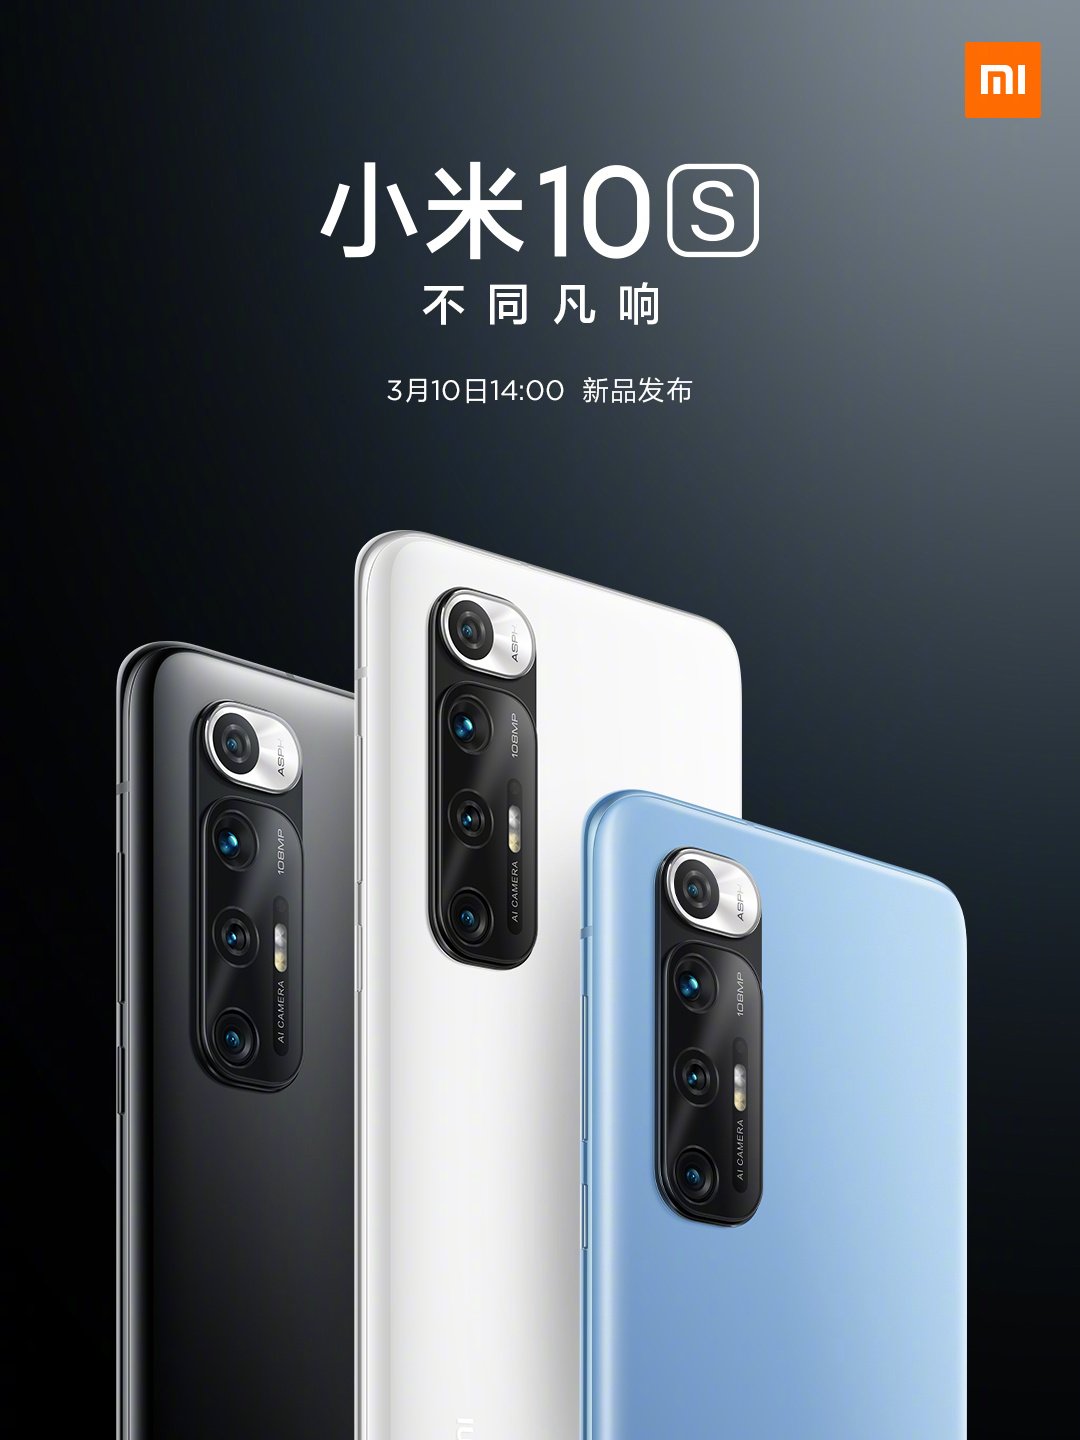 Xiaomi Mi 10S dhajinta taariikhda